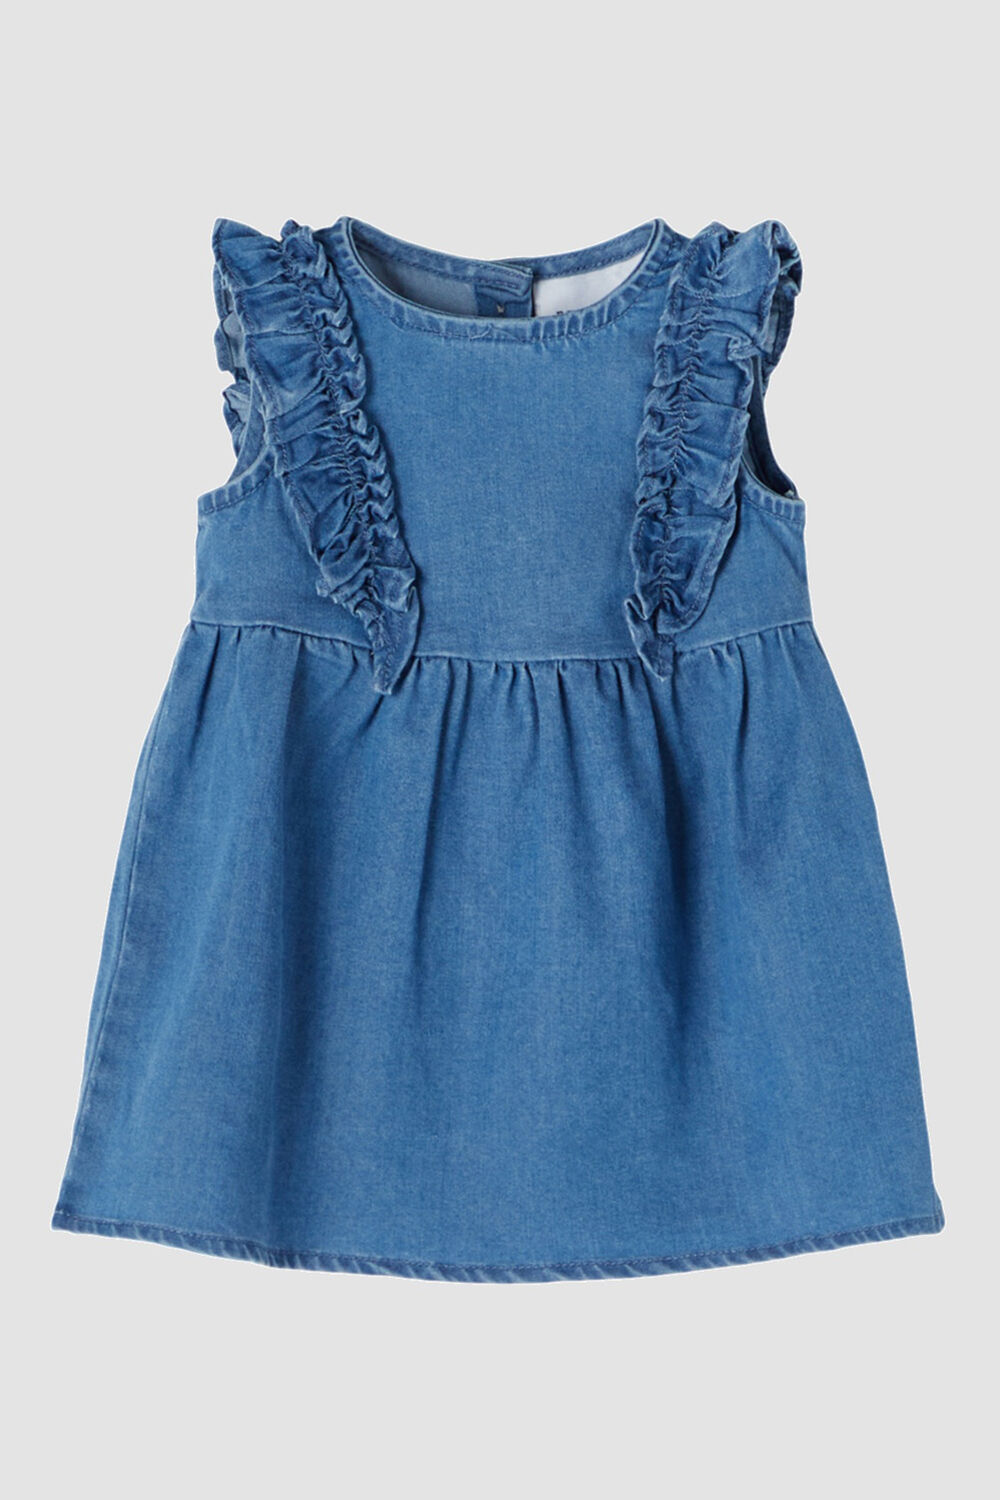 1-3 Years Summer Baby Girl Jeans Clothing Skirts Child Kids Girls Denim  Dress | Wish